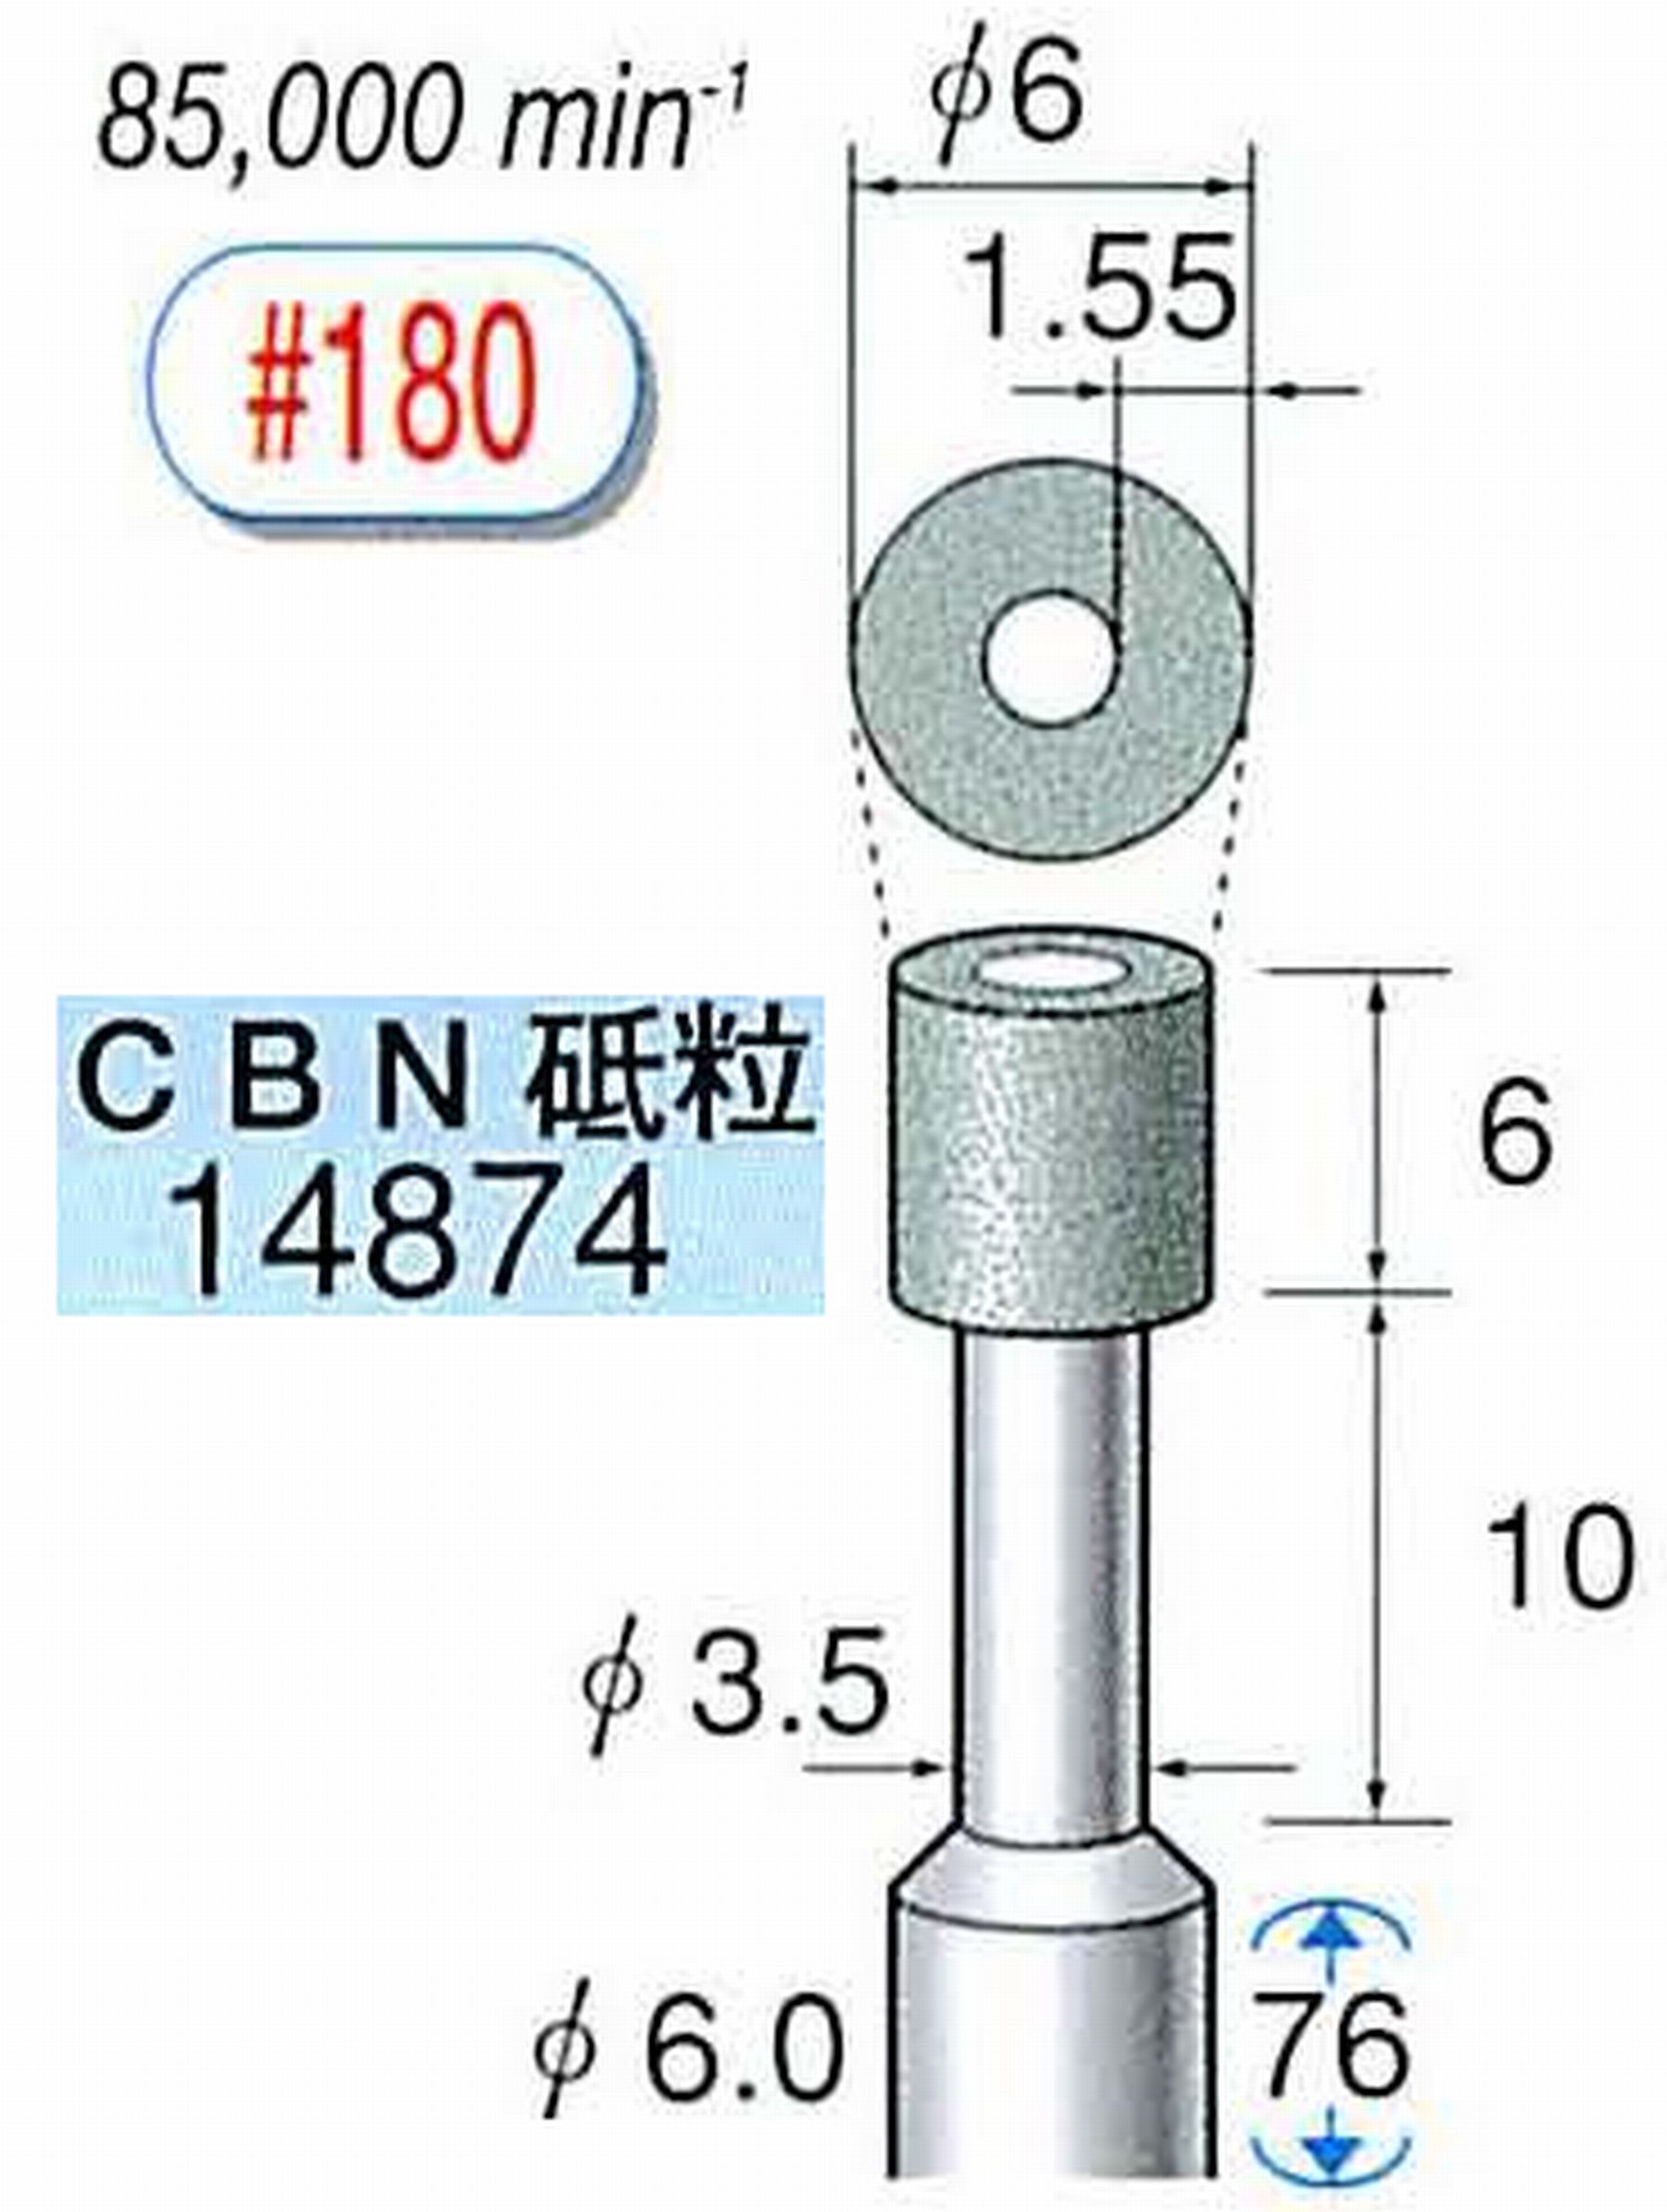 ナカニシ/NAKANISHI ビトリファイドダイヤモンド砥石 CBN砥粒 軸径(シャンク)φ6.0mm 14874